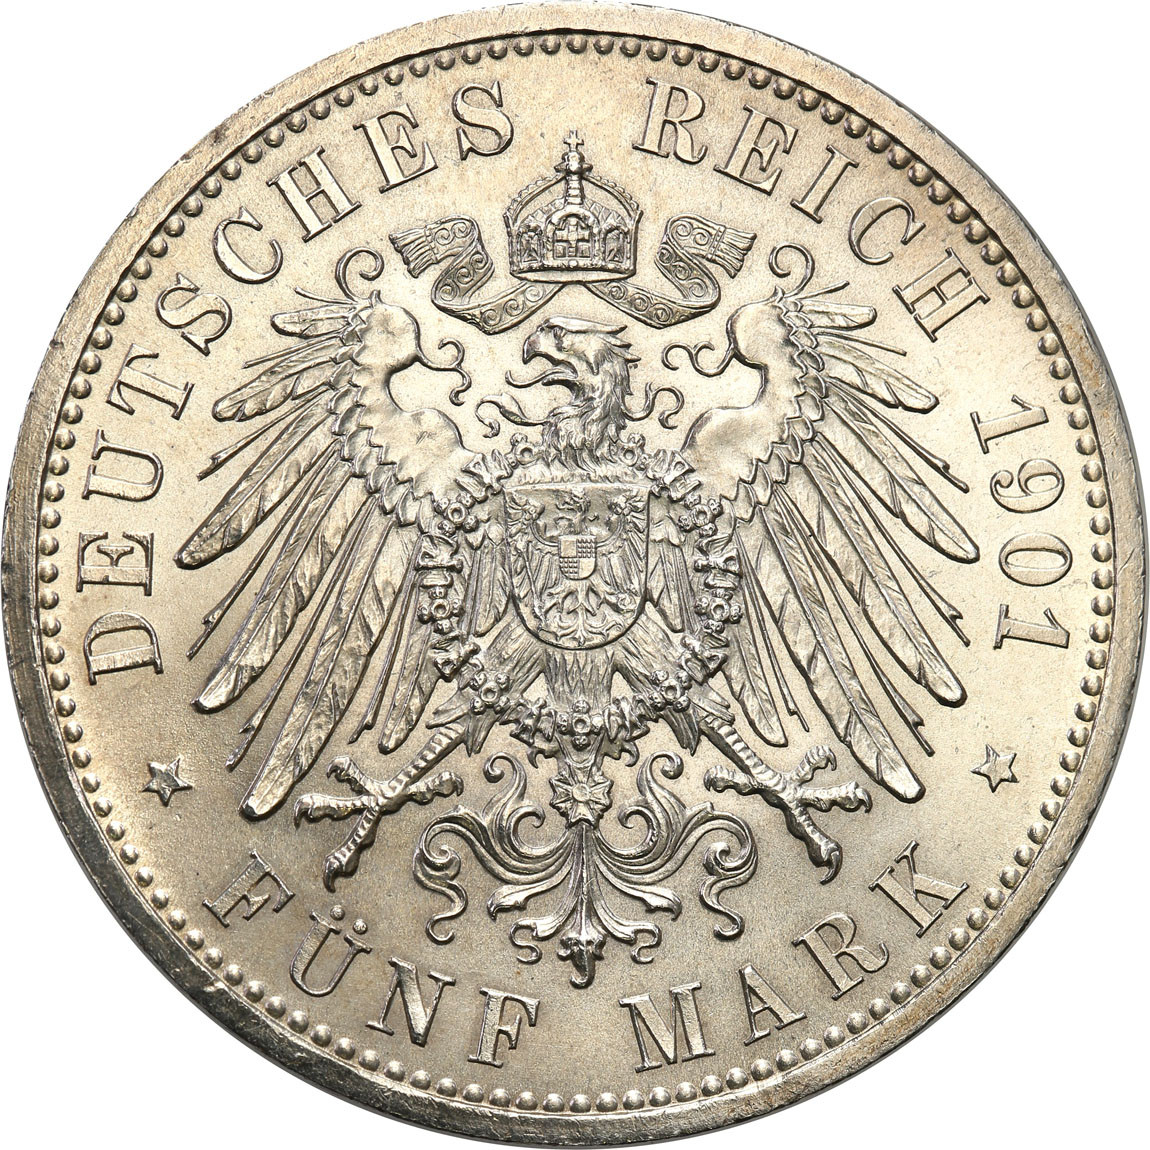 Niemcy, Prusy. 5 marek 1901 A, Berlin - PIĘKNE